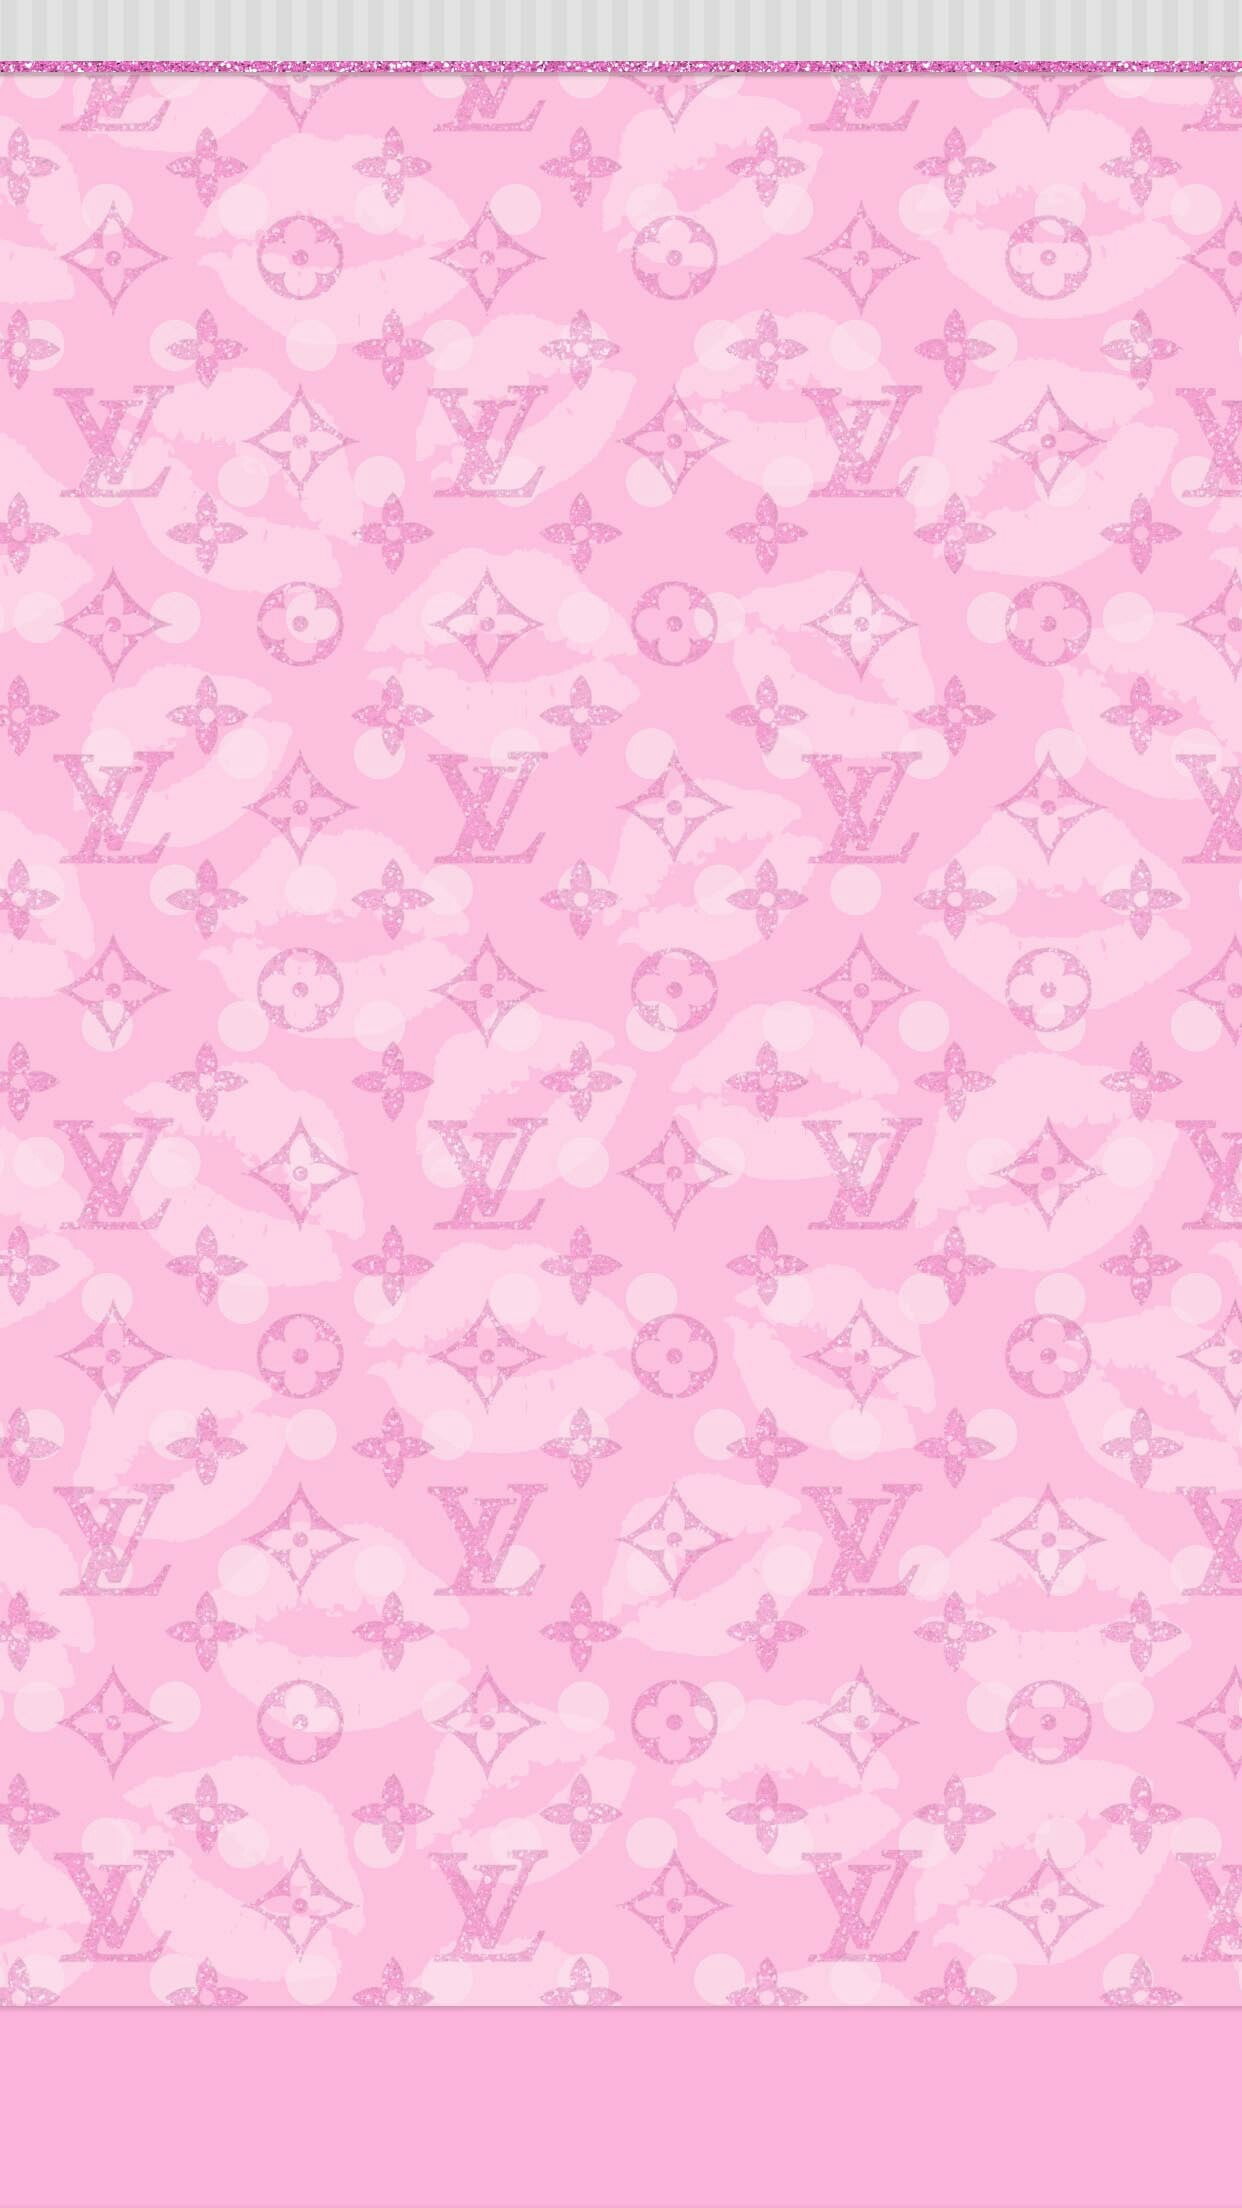 Lv wallpaper  Louis vuitton iphone wallpaper, Pink wallpaper iphone,  Iphone wallpaper girly